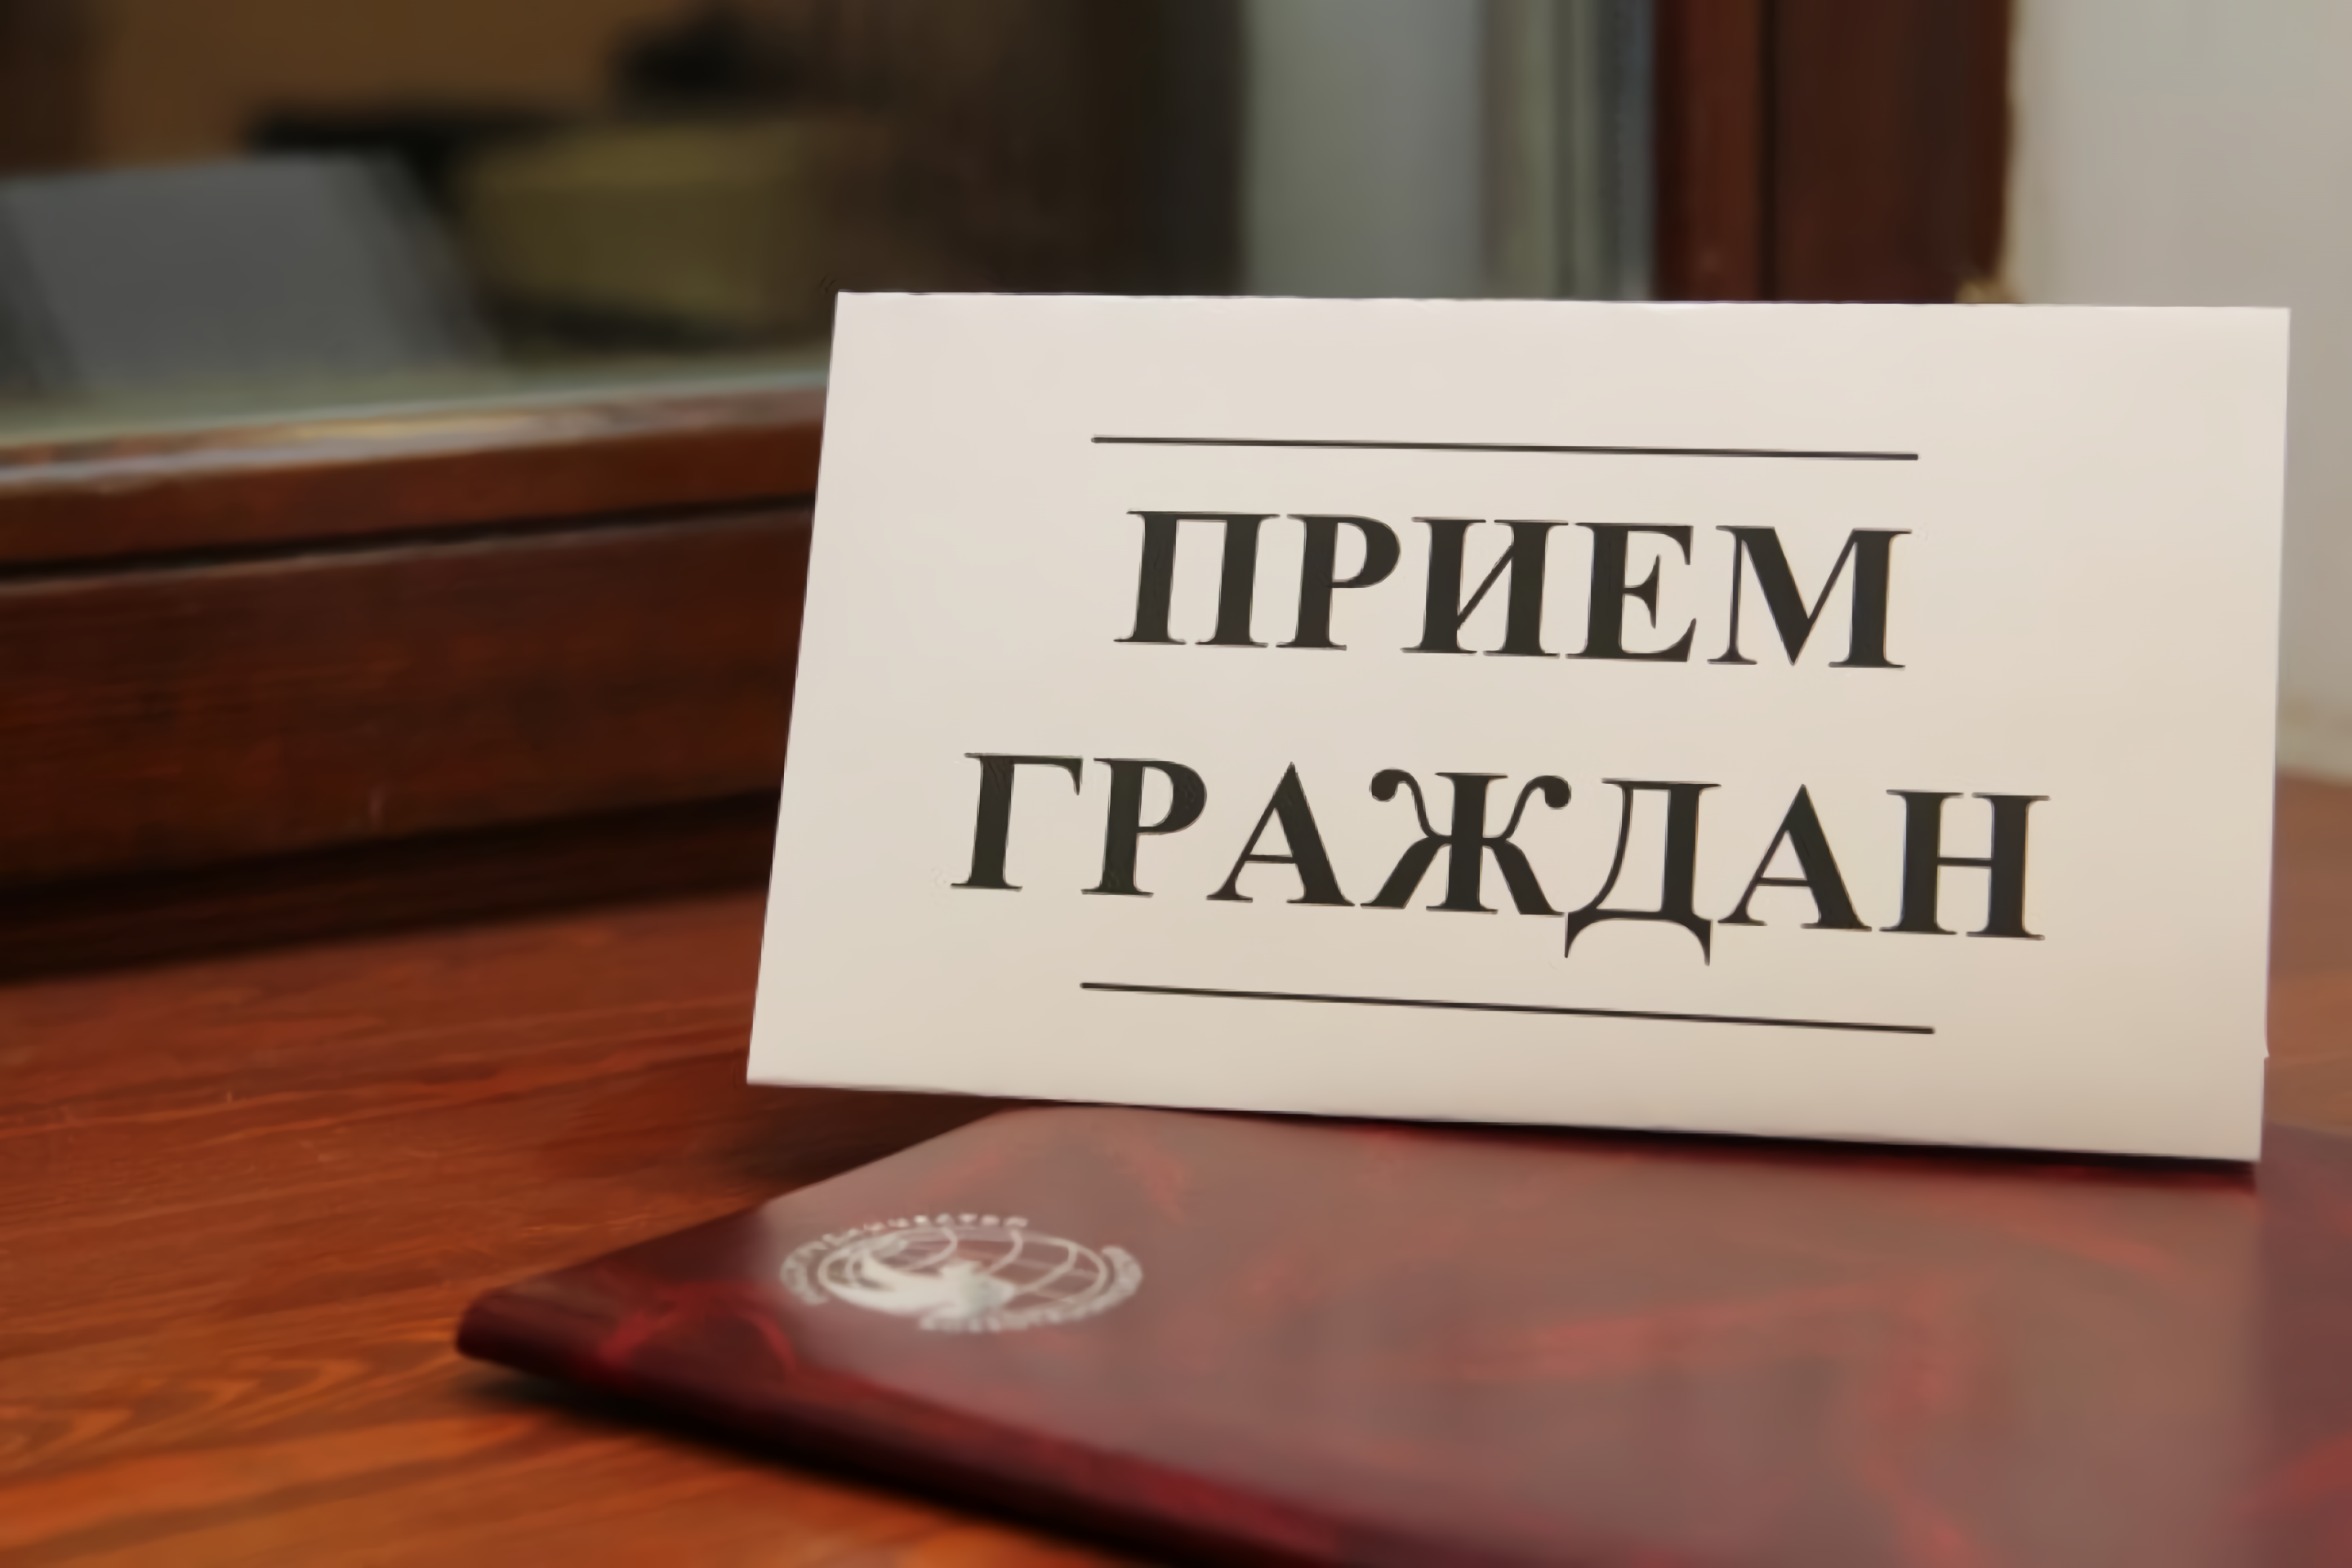 В Касторенском районе состоится прием граждан заместителем прокурора Курской области.